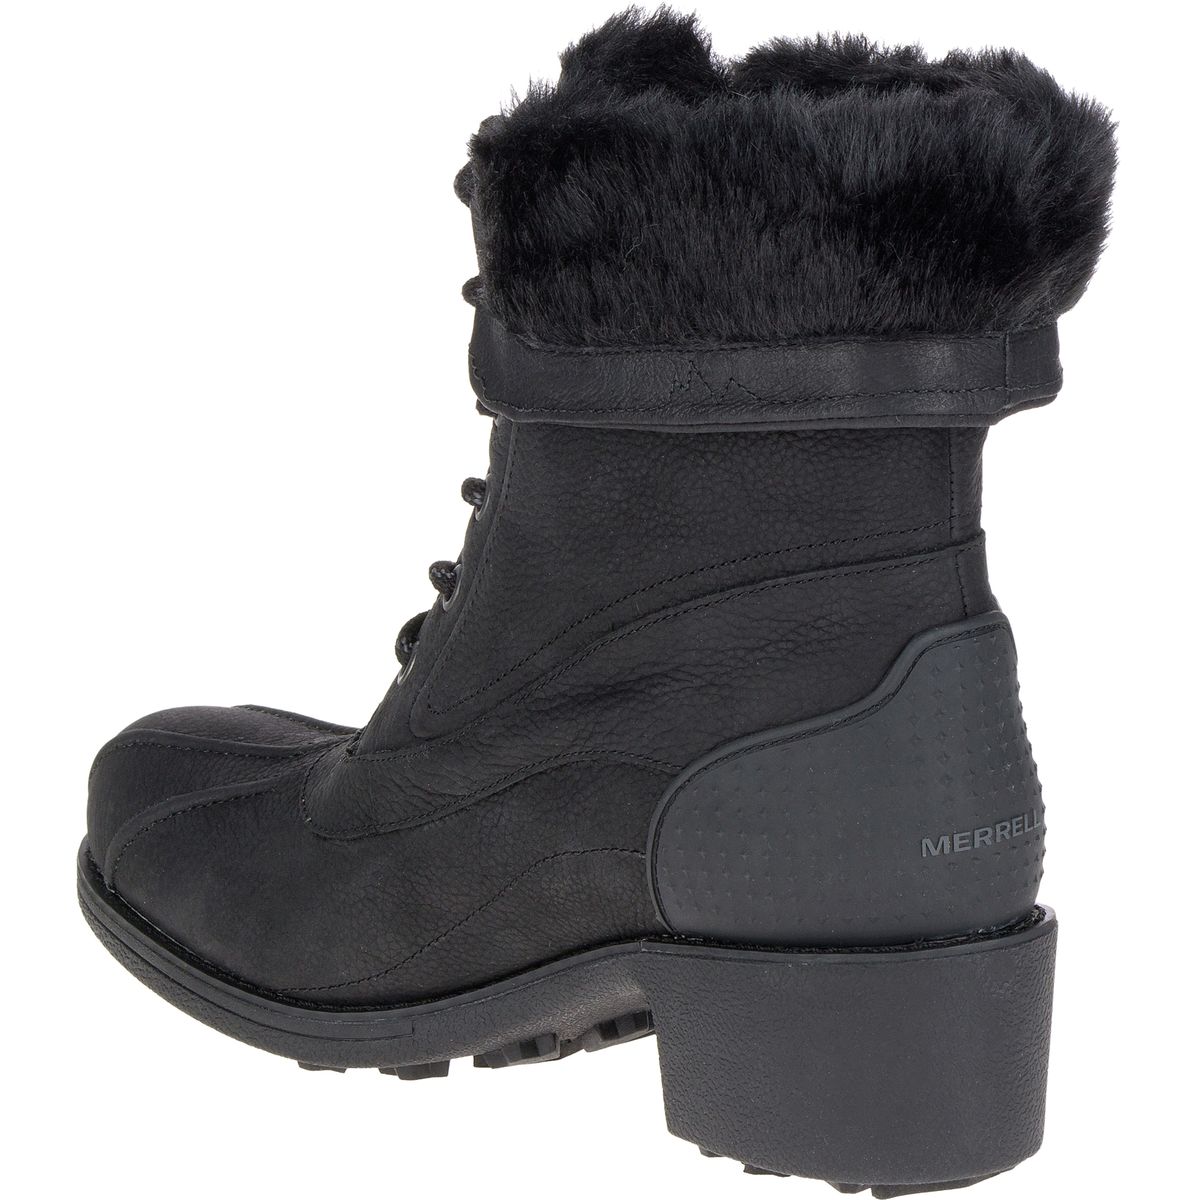 Merrell Chateau Mid Lace Polar Waterproof Boot - Women's - Footwear